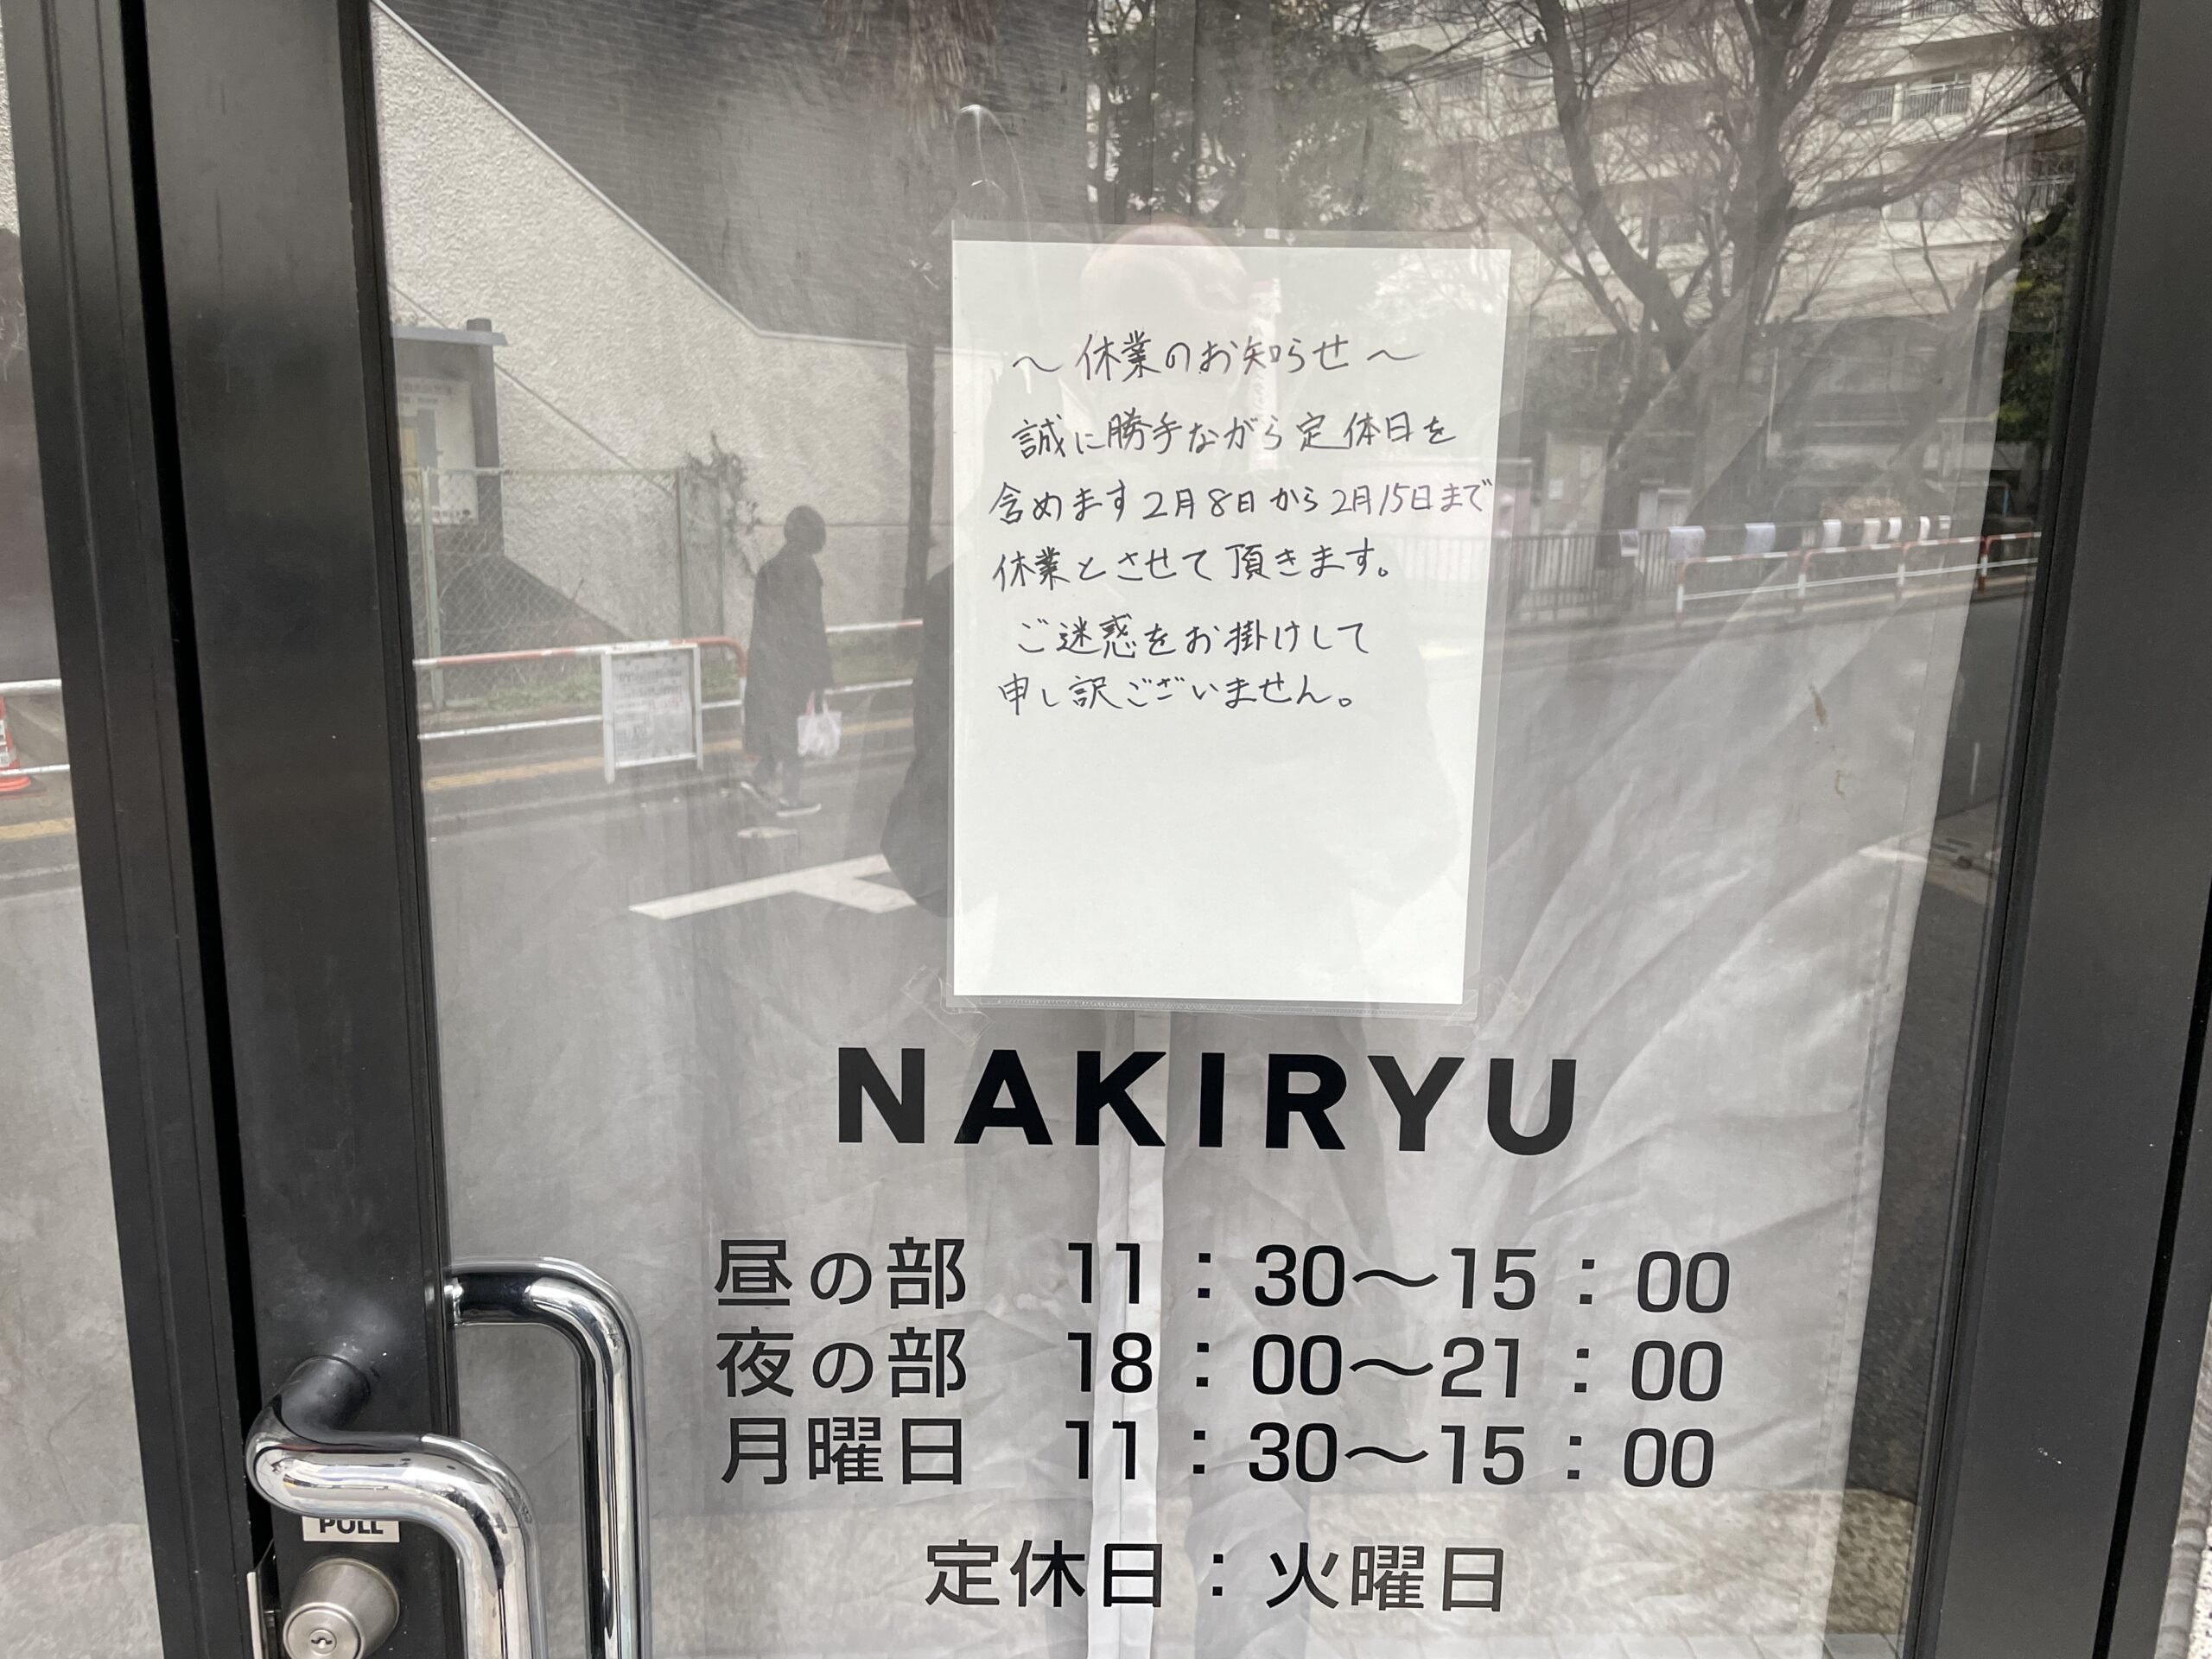 Drei Versuche, drei Mal Urlaub: Nakiryū in Toshima, Tokyo